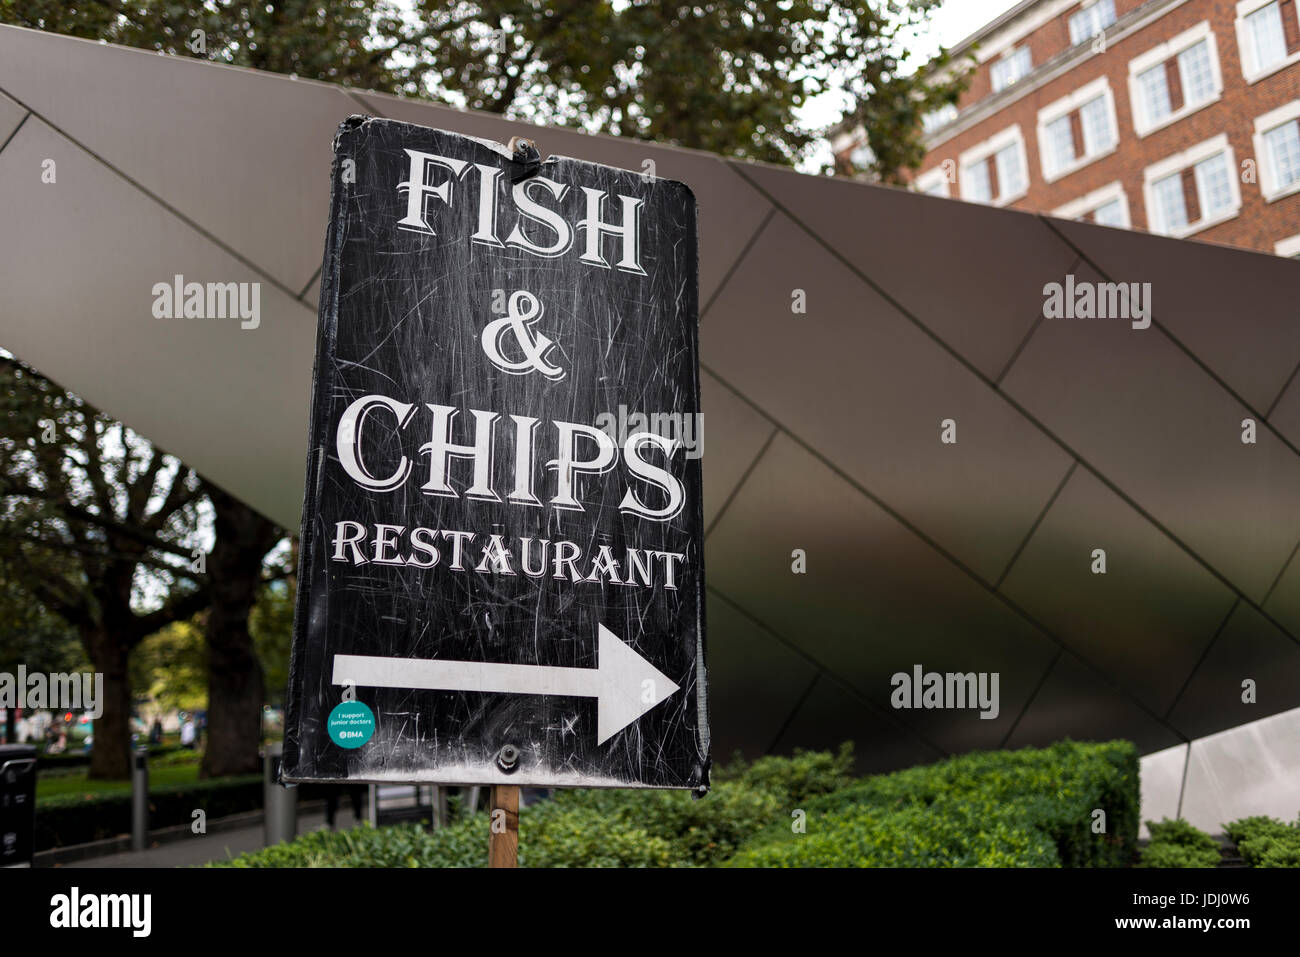 Ein Fisch & Chips Restaurant Plakat mit einem großen Pfeil Punkt Richtung, London, UK Stockfoto